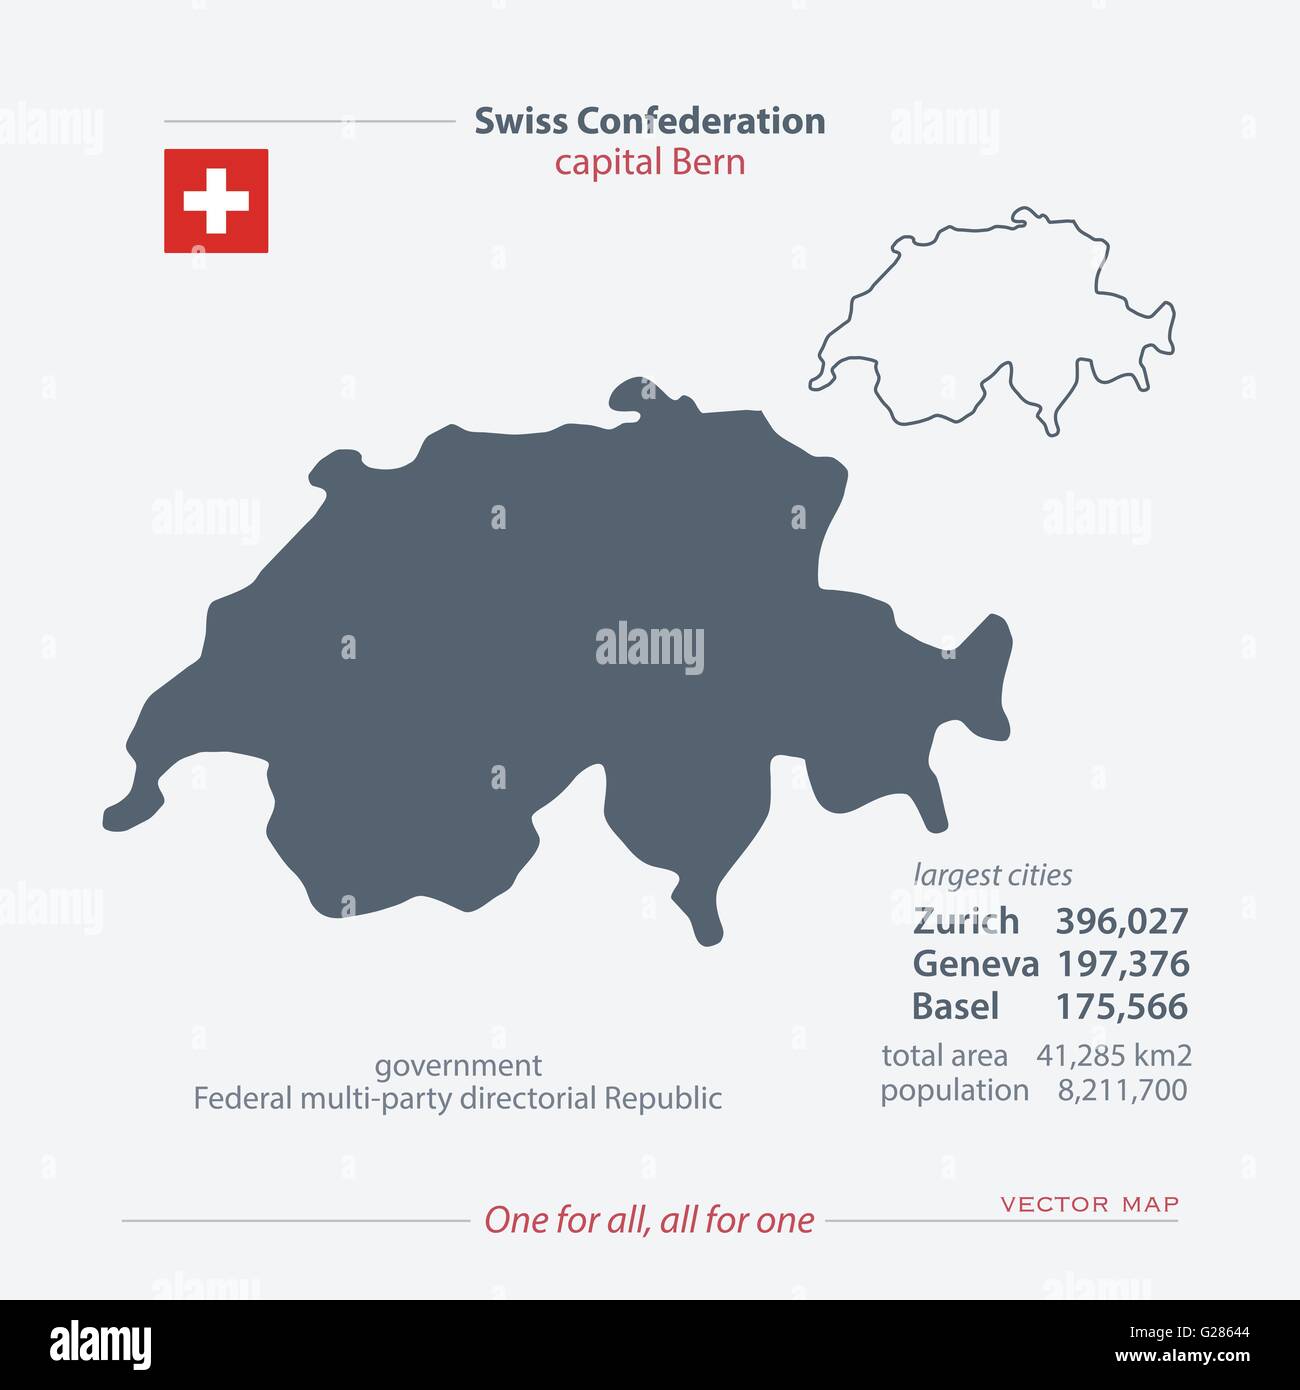 Schweizerischen Eidgenossenschaft isoliert Karten und offizielle Flaggen-Symbol. Vektor-Schweizer politische Kartensymbole mit allgemeinen Informationen. Schweiz Stock Vektor